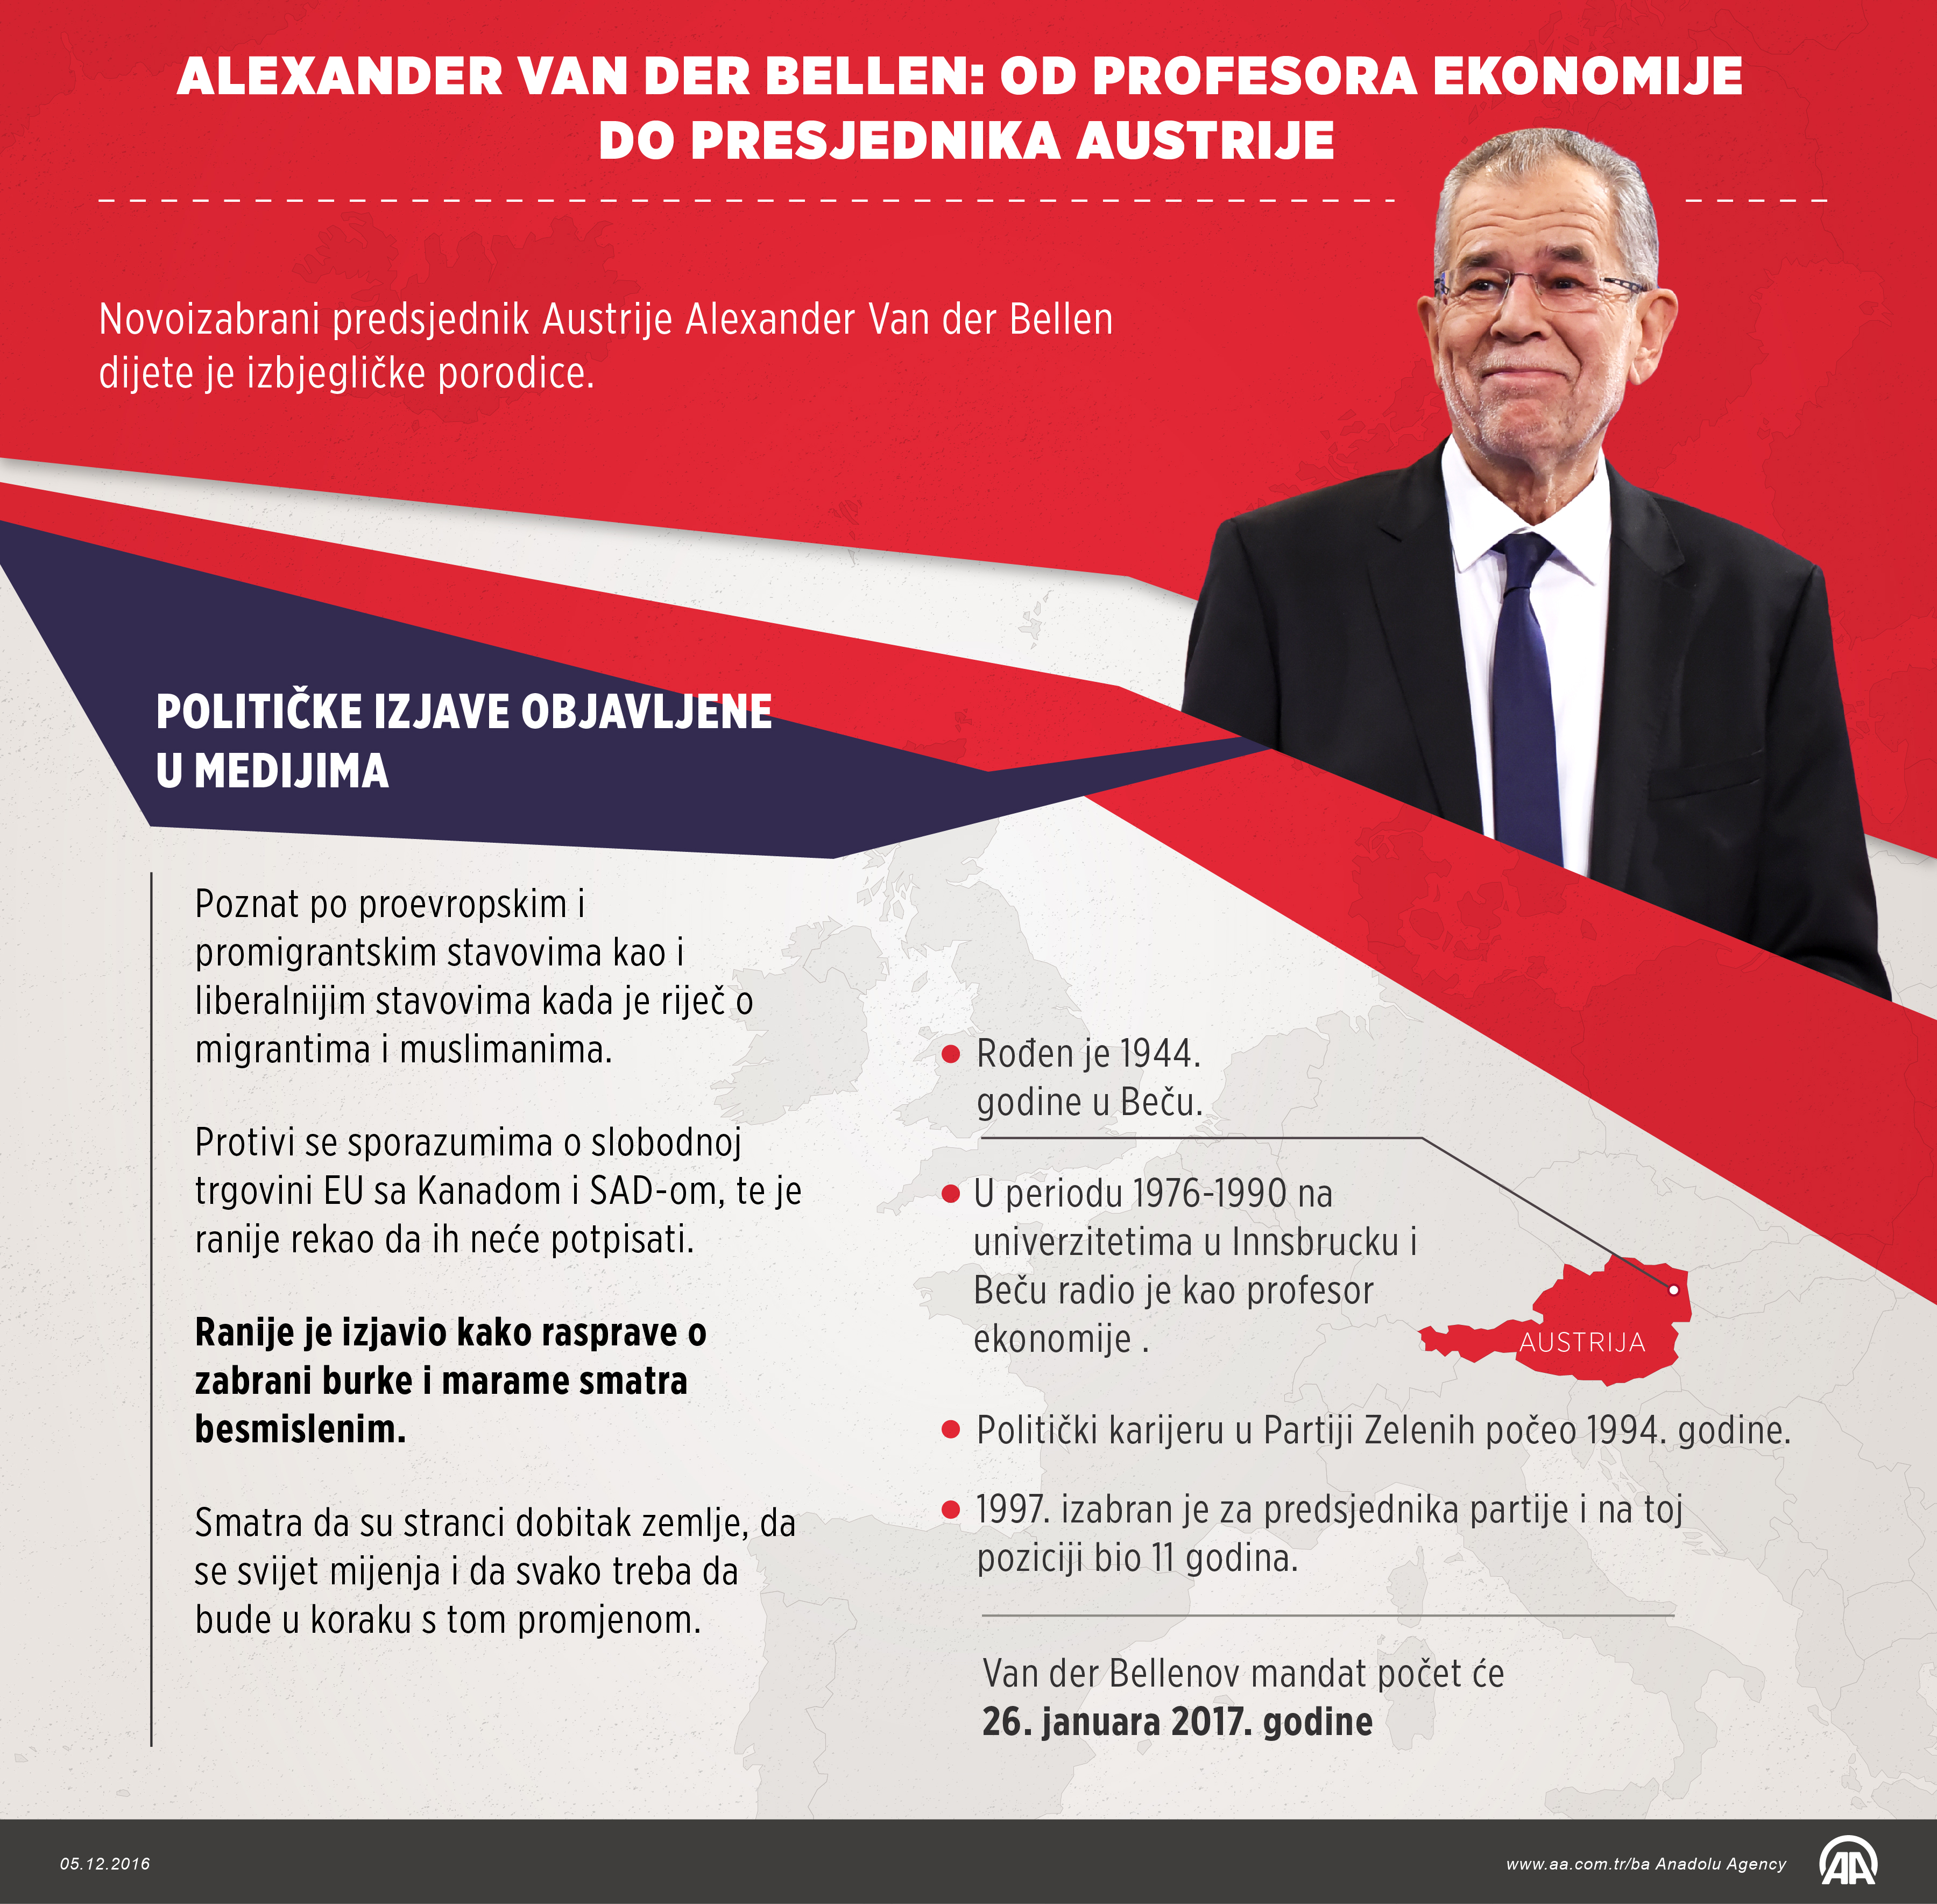 Alexander-Van-der-Bellen-infografika.jpg - Alexander Van der Bellen: Od profesora ekonomije do predsjednika Austrije